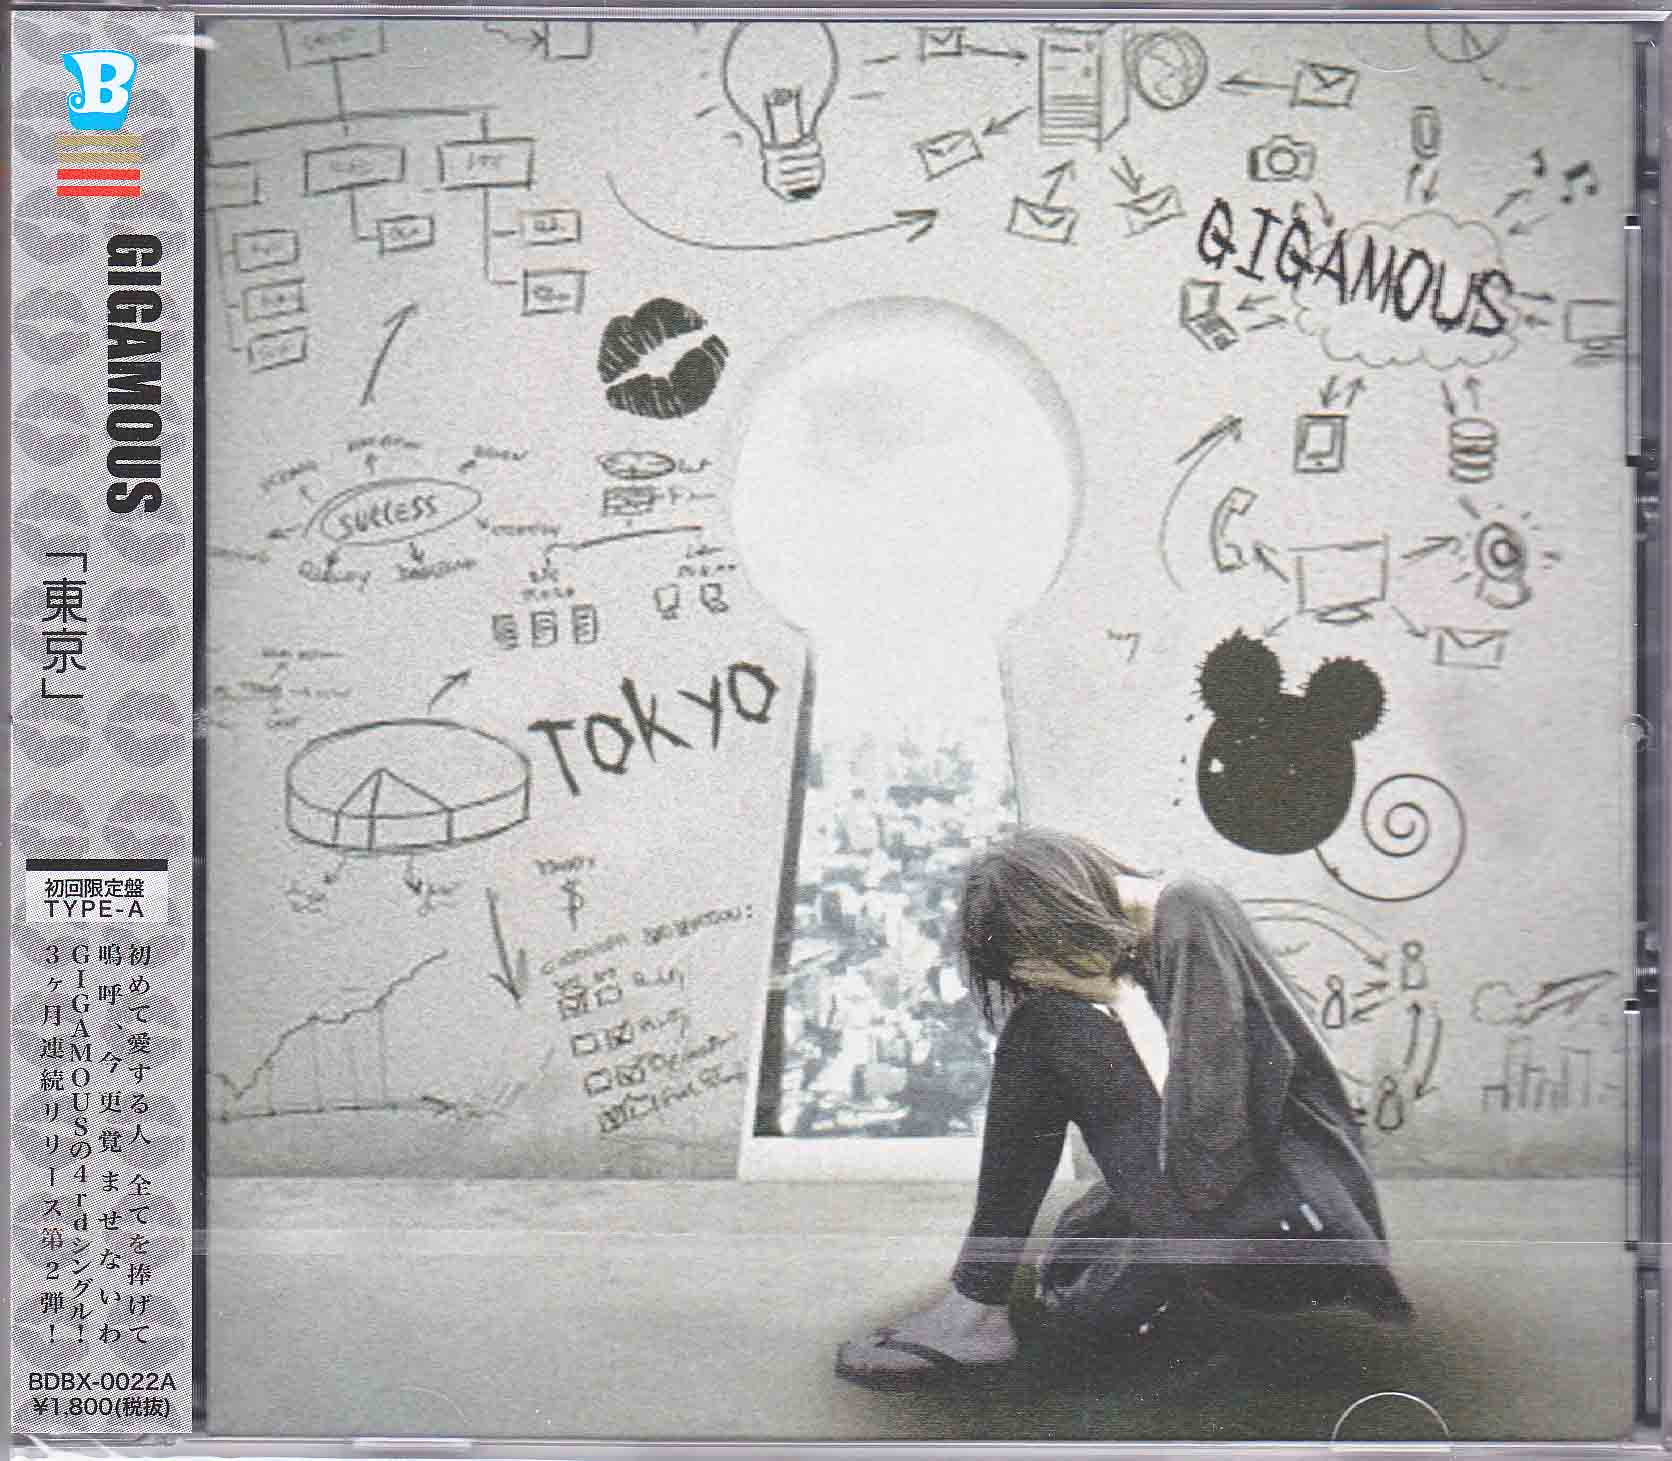 ギガマウス の CD 東京 Type-A初回限定盤